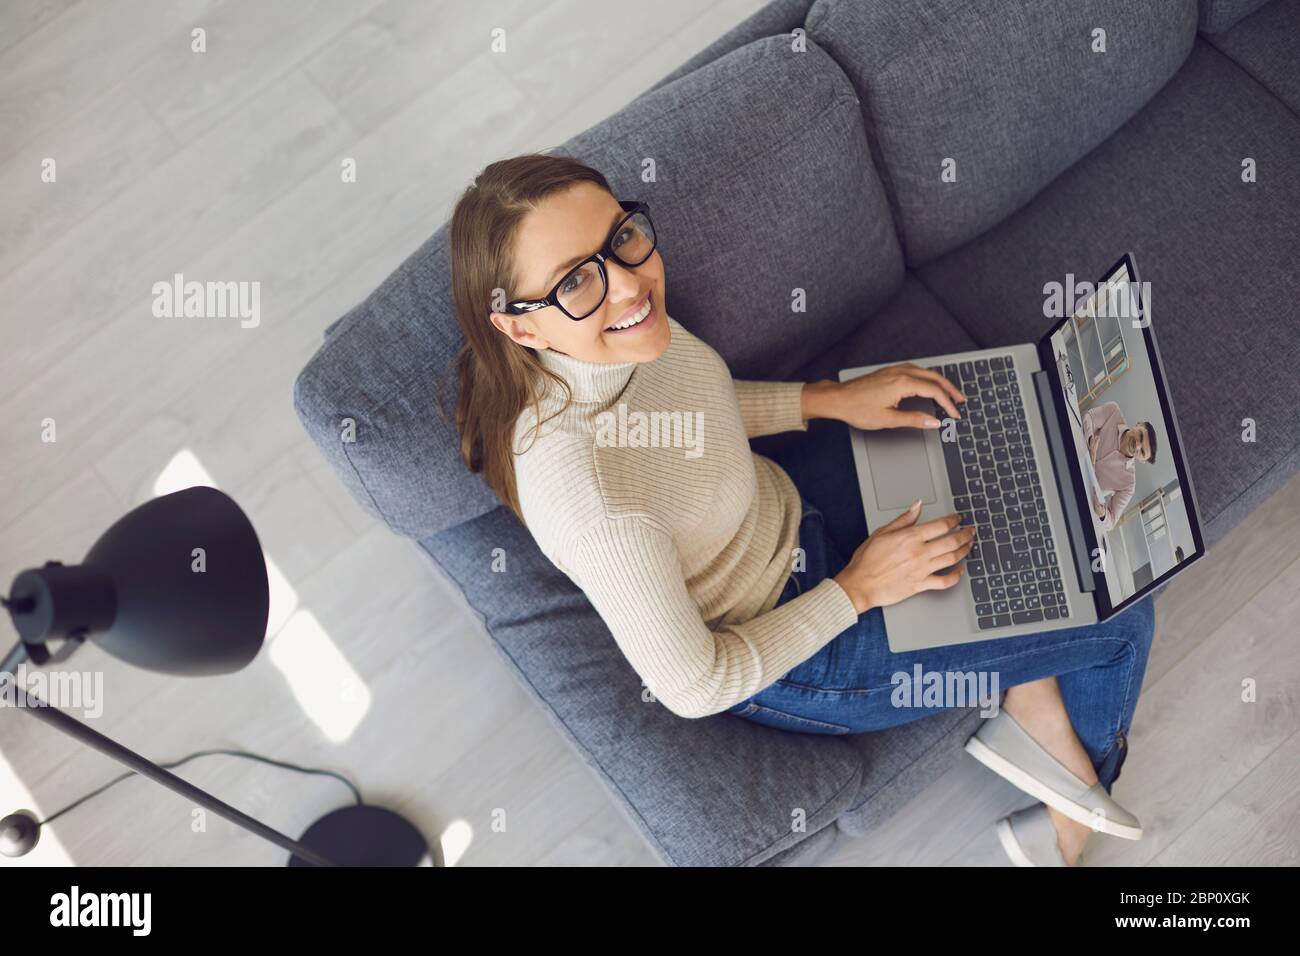 Lavoro online a casa. Una donna sorridente con un computer portatile guarda la videocamera in una videochiamata con un partner seduto su un divano in un soggiorno. Foto Stock